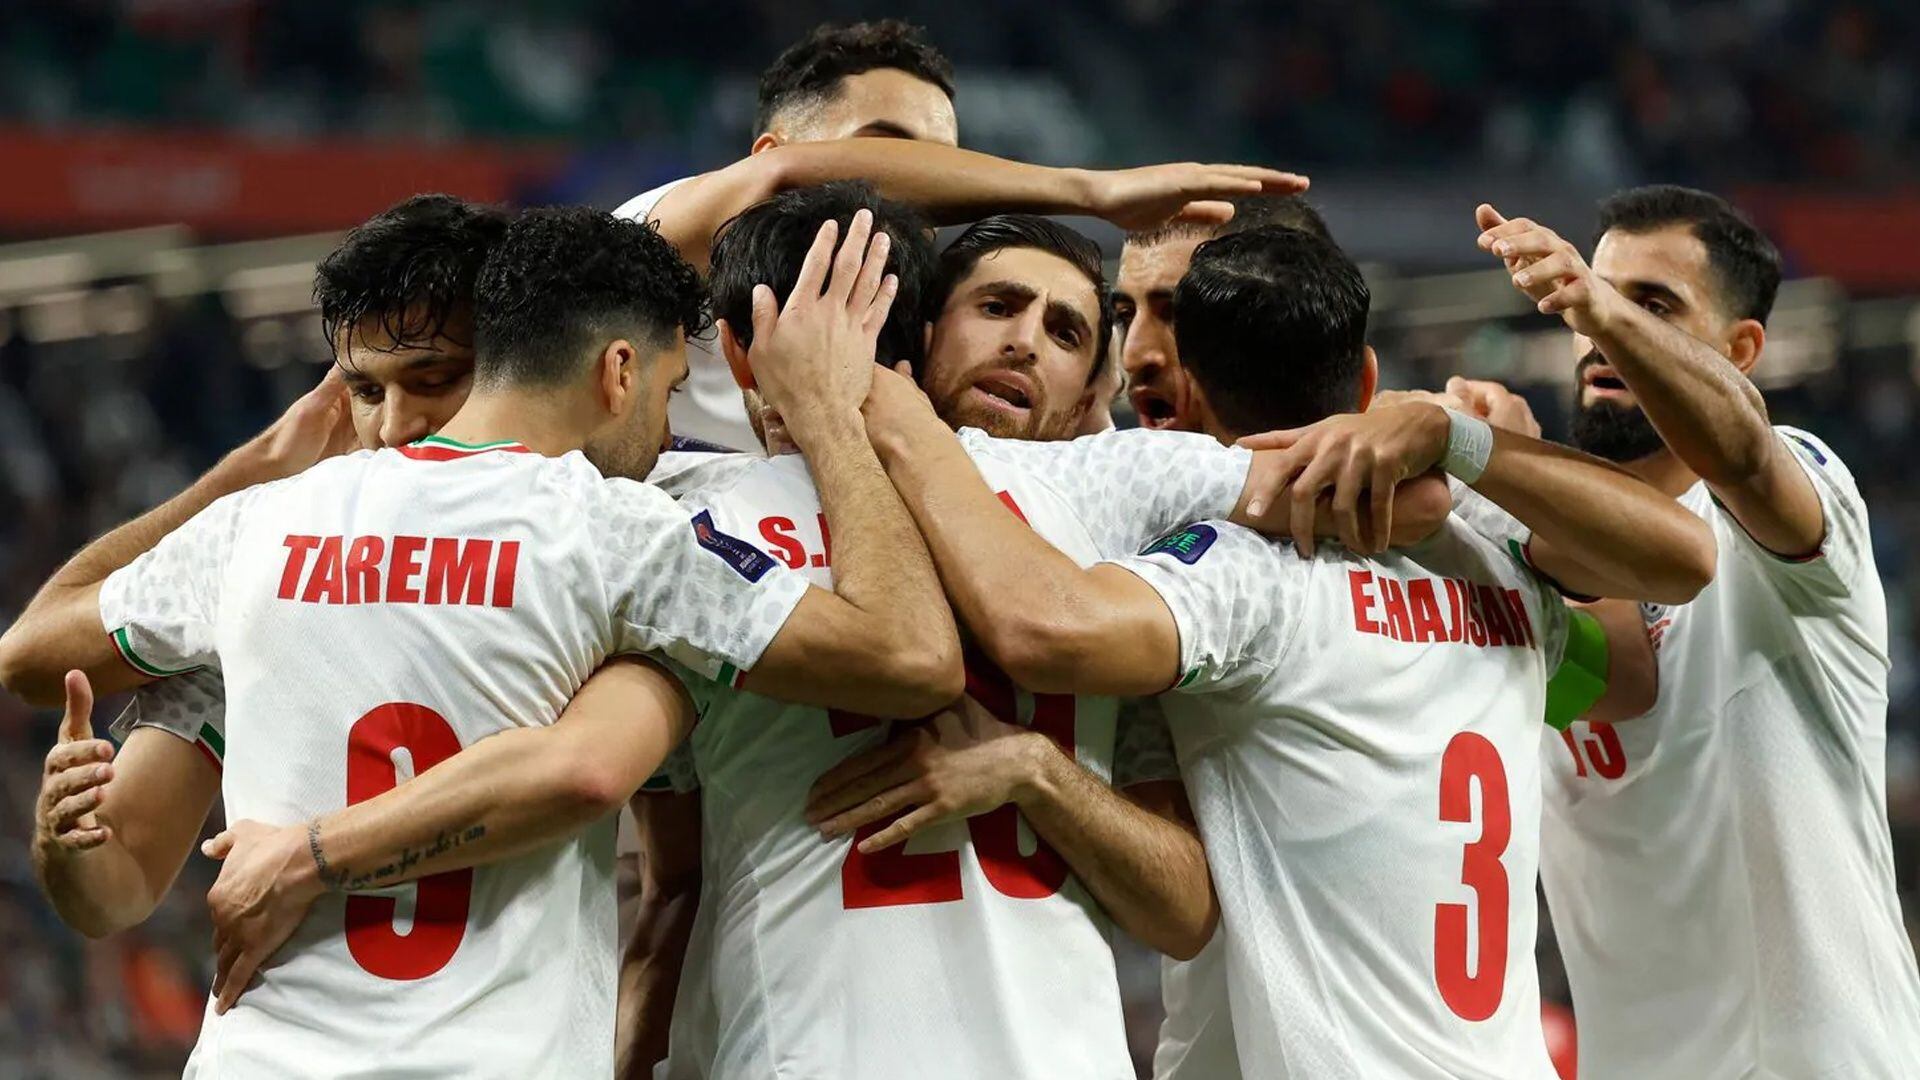 El fútbol los une, Irán muestra solidaridad con Palestina antes de una cómoda victoria